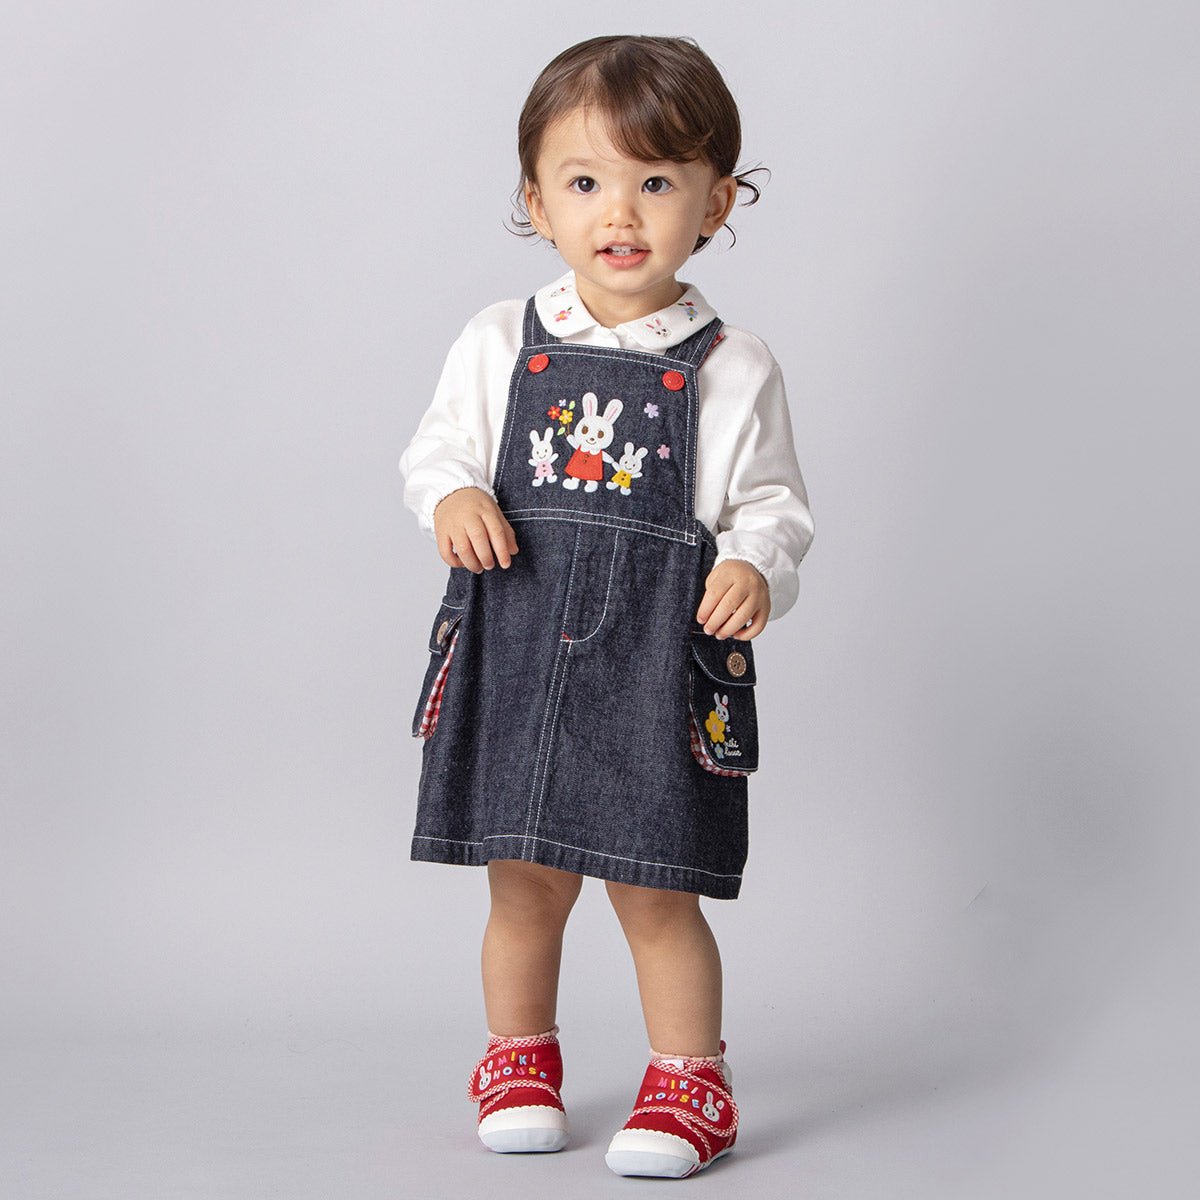 Toddler Baby Girls Dress Lovely Dress Sleeveless Dress Pocket Denim Overall  Dress Blue 12-18 Months - Walmart.com